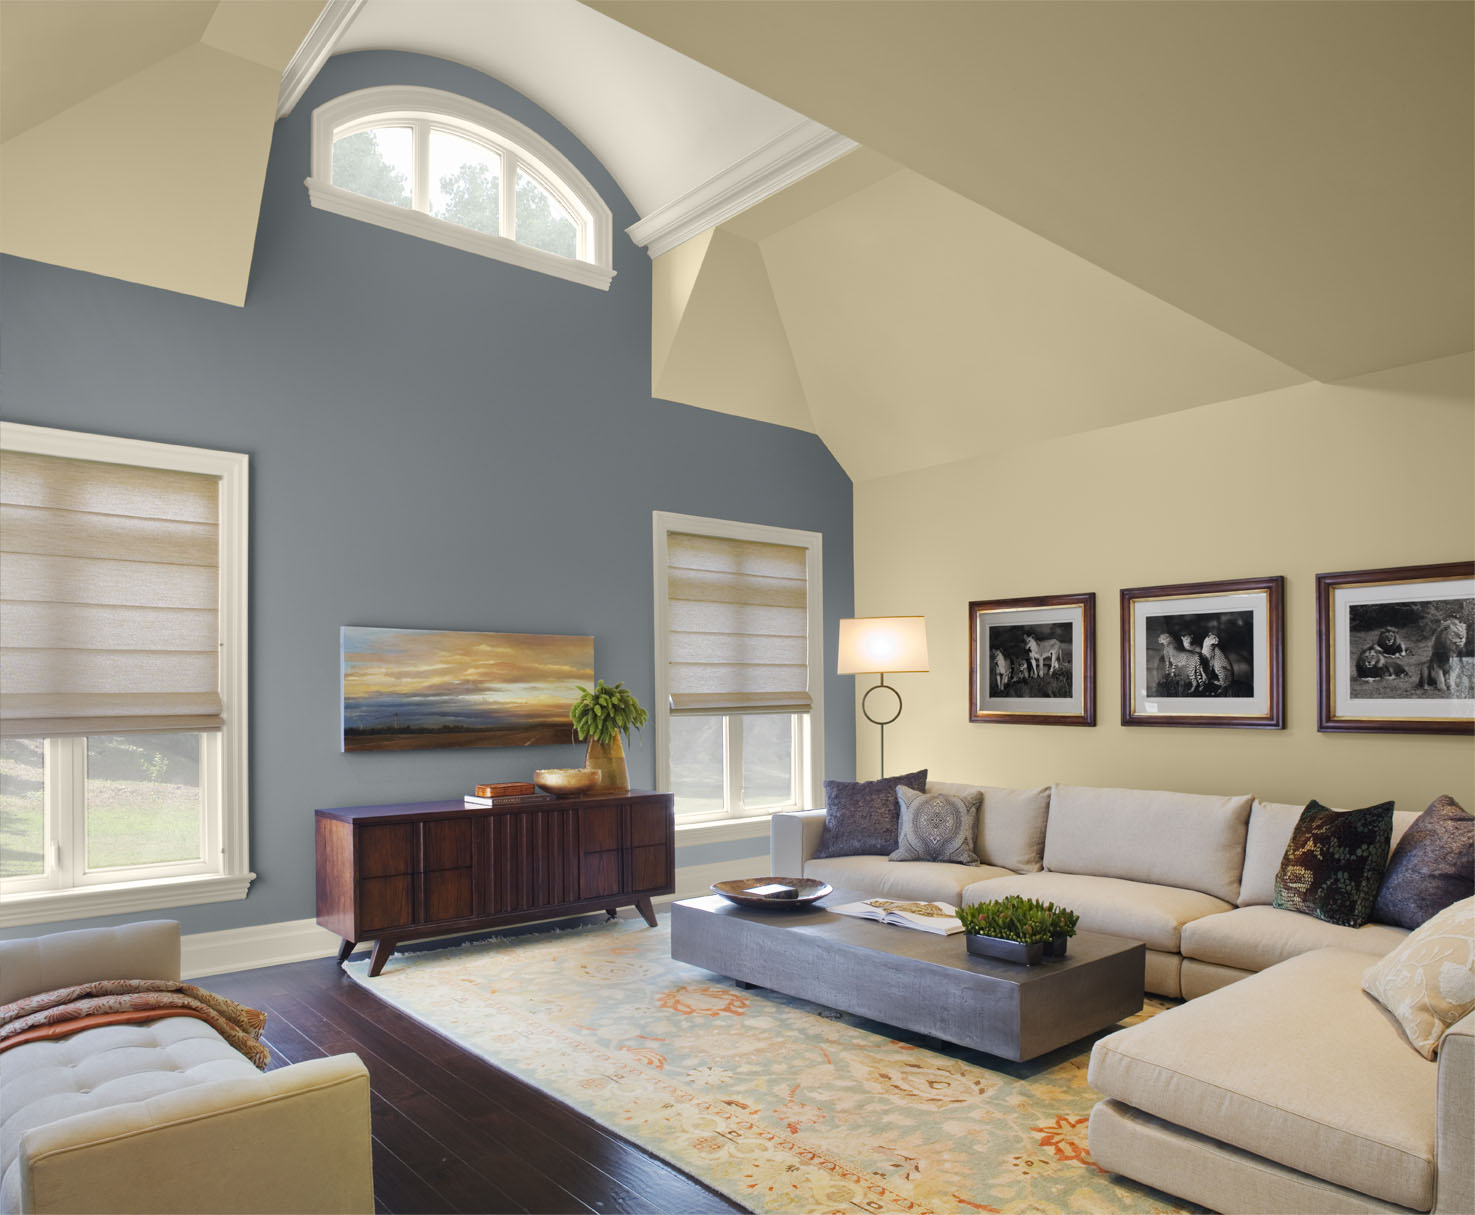 30 Excellent Living Room Paint Color Ideas - SloDive